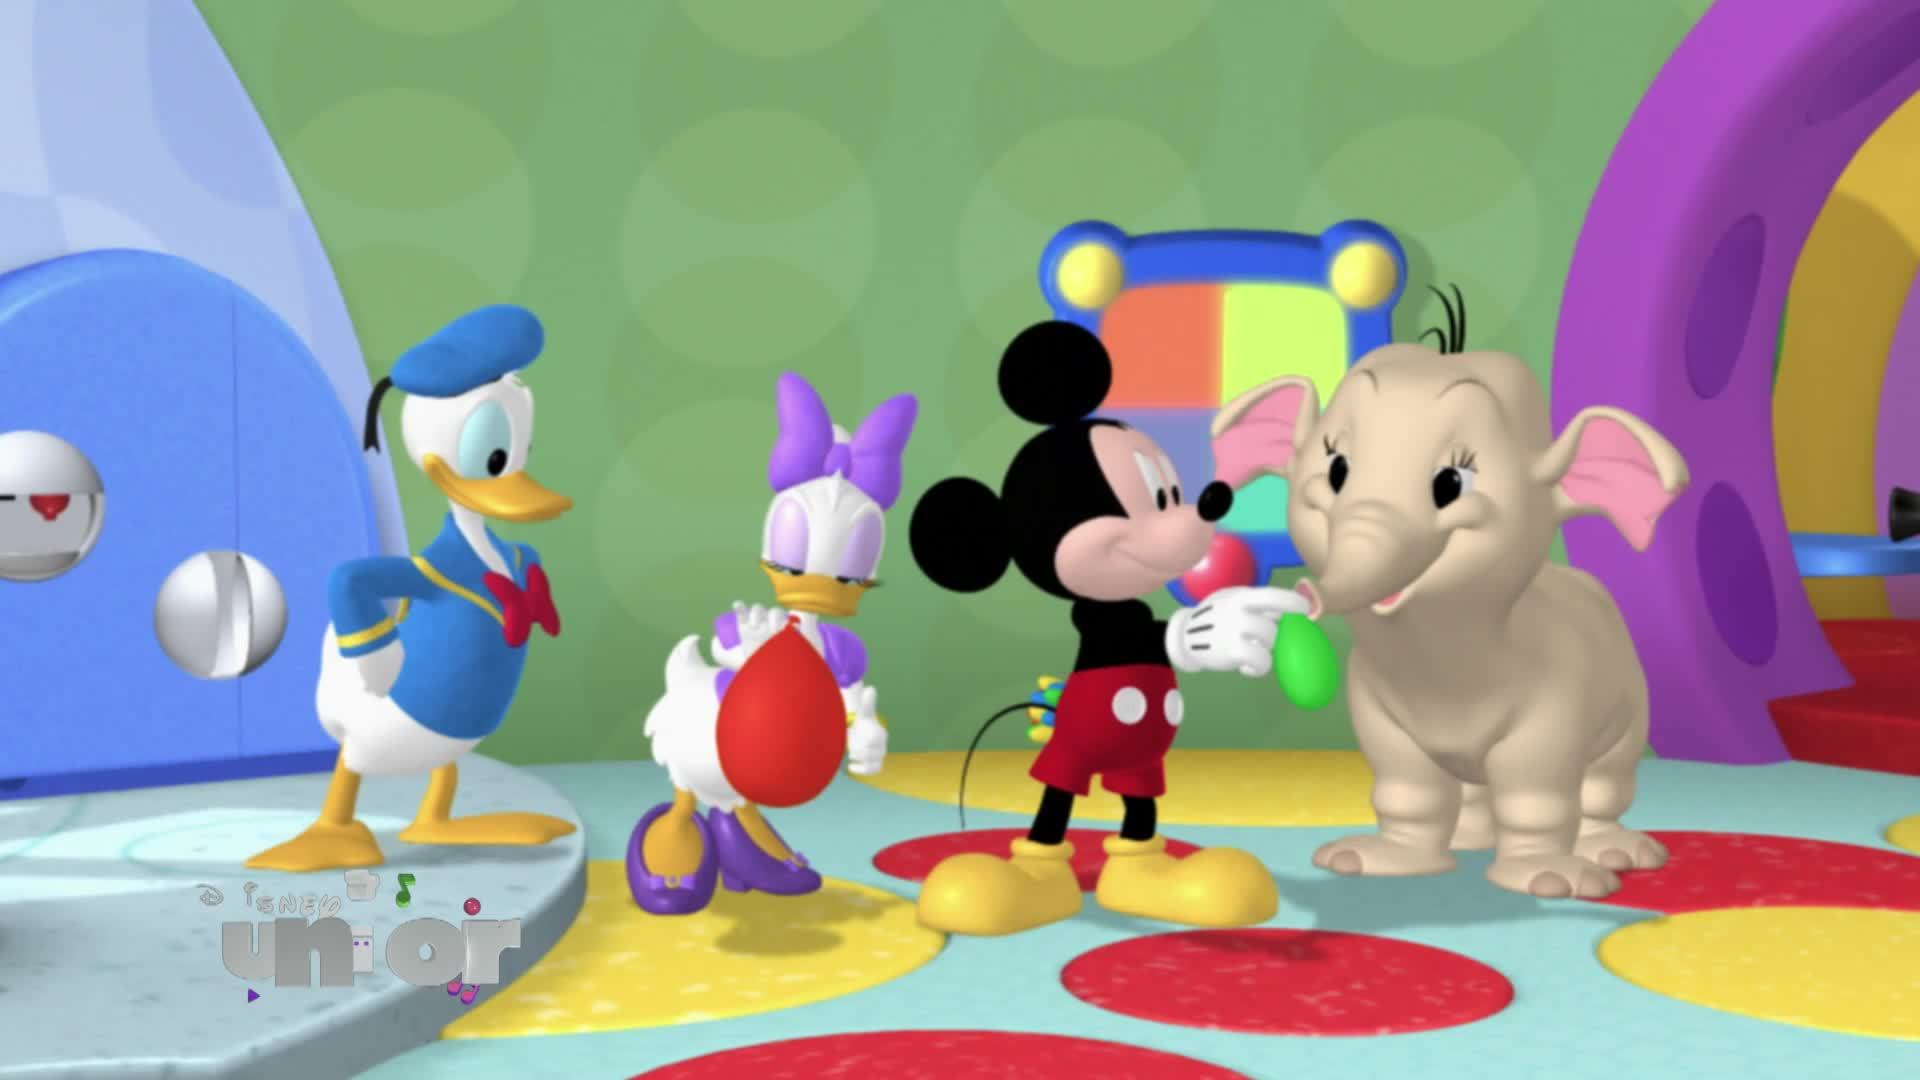 Mickey mouse, temporada 4 la canción de cumpleaños dibujos